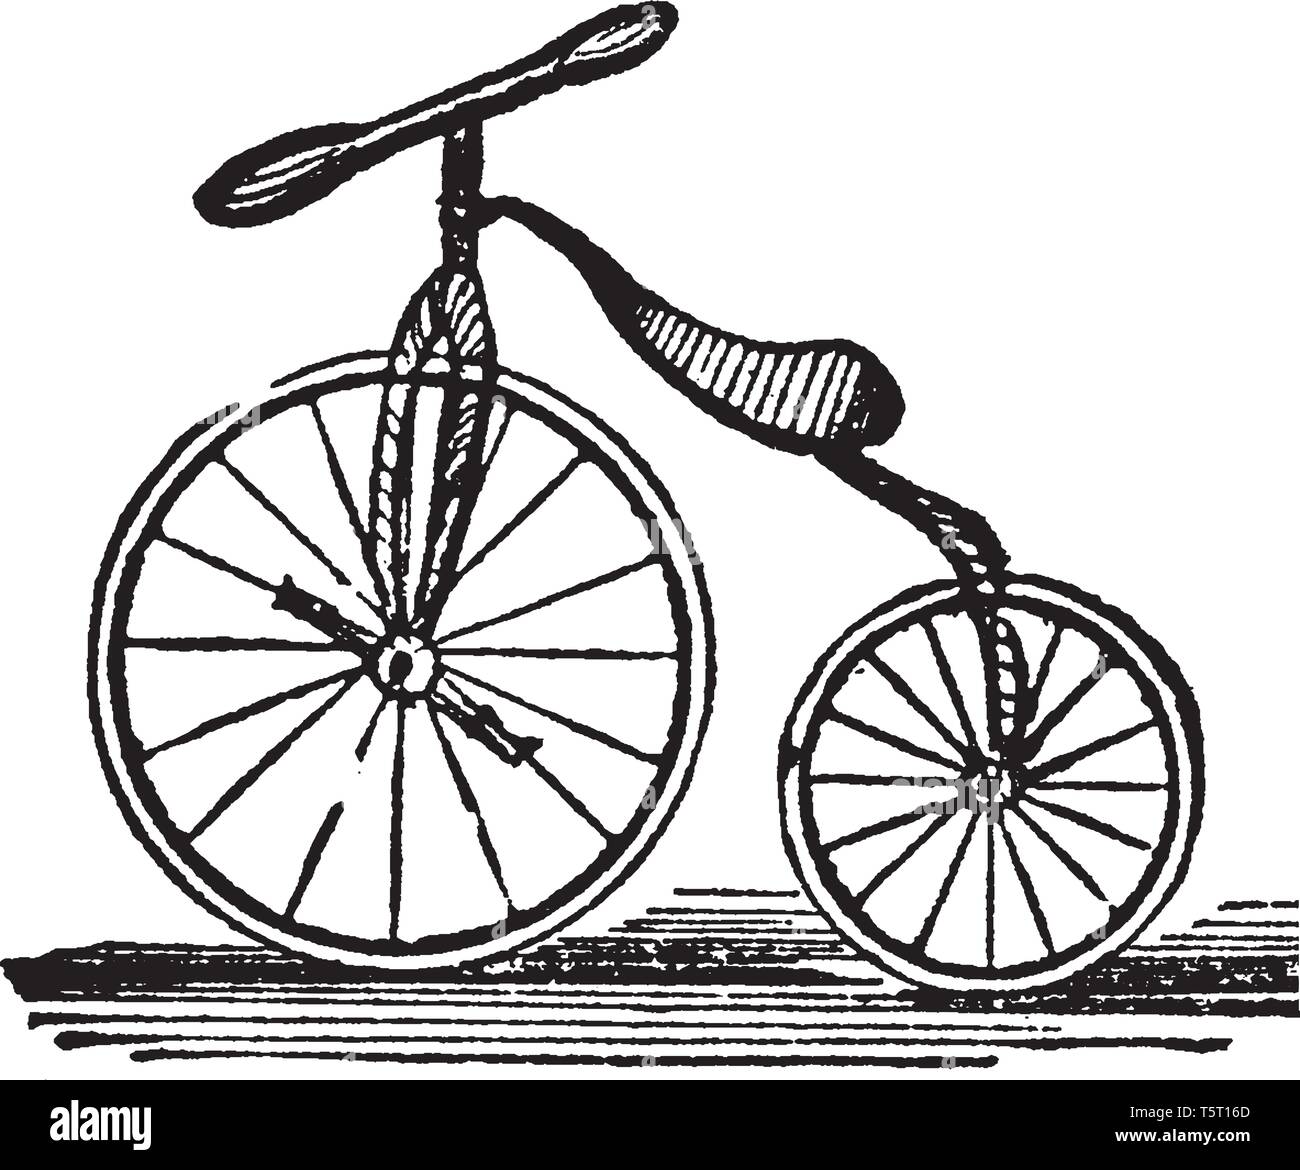 Vélocipède est une lumière transport routier pour une personne seule, ou de dessin Ligne vintage illustration gravure. Illustration de Vecteur